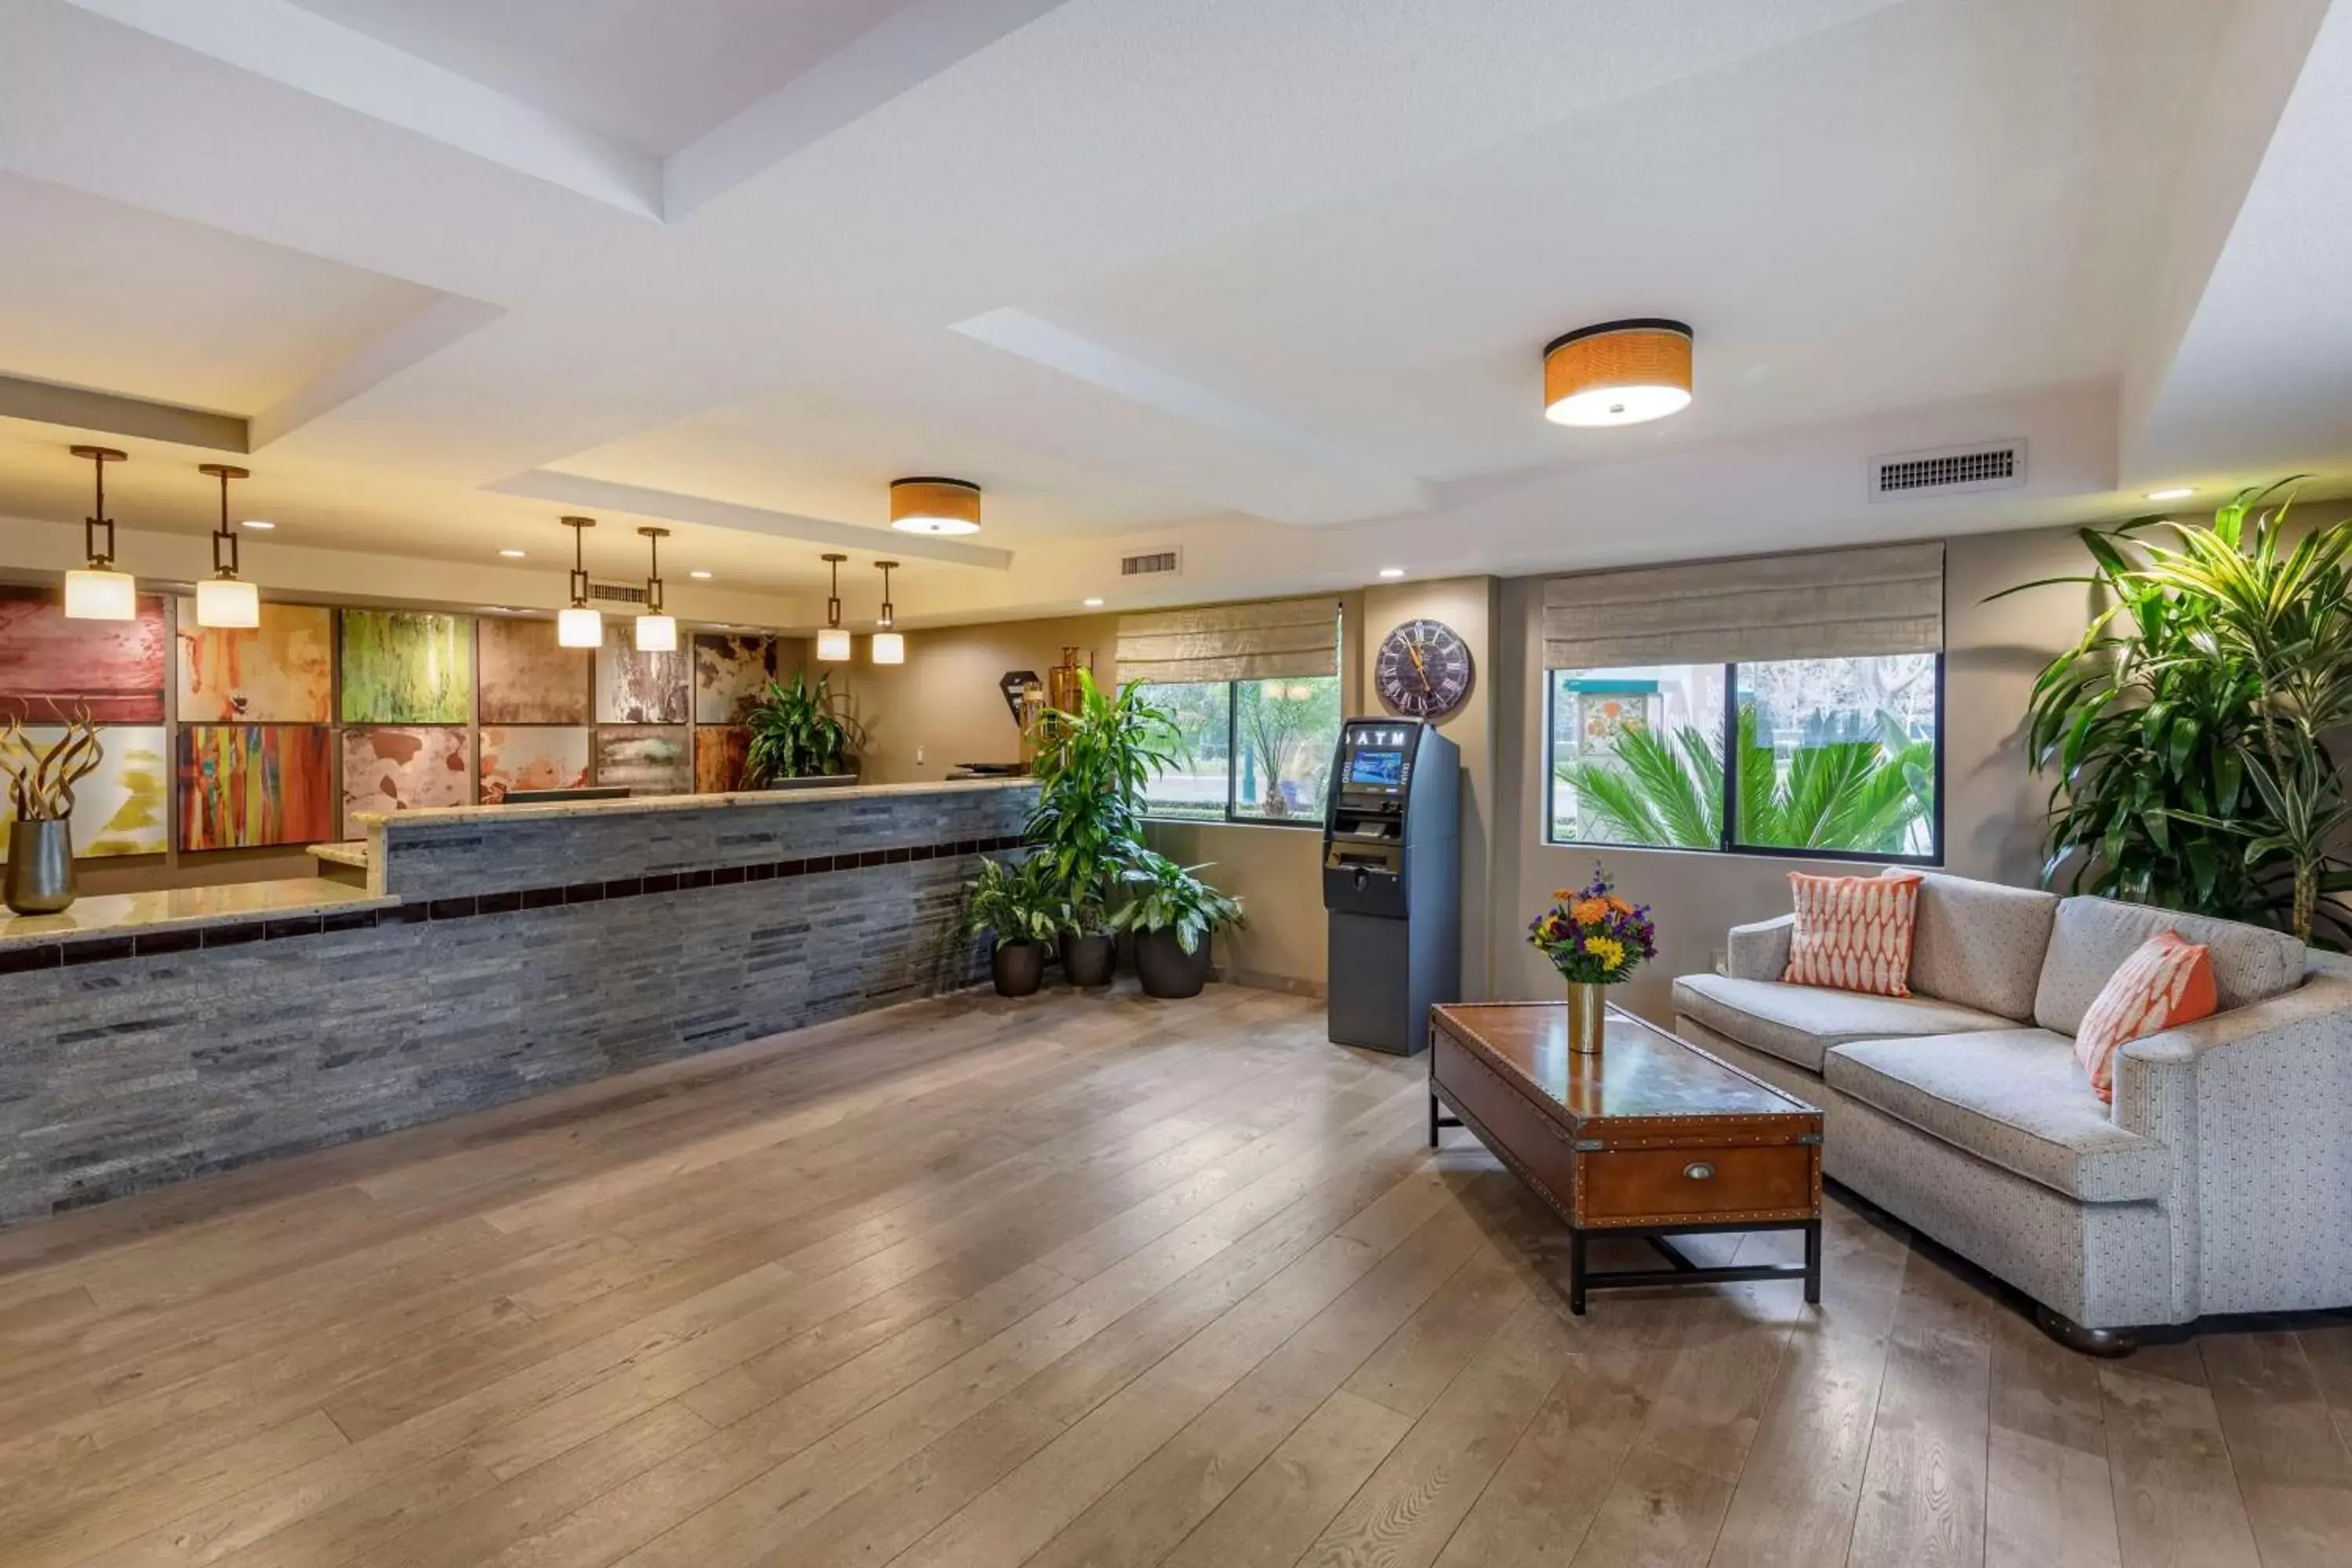 Lobby or reception, Lobby/Reception in Best Western Plus Anaheim Inn